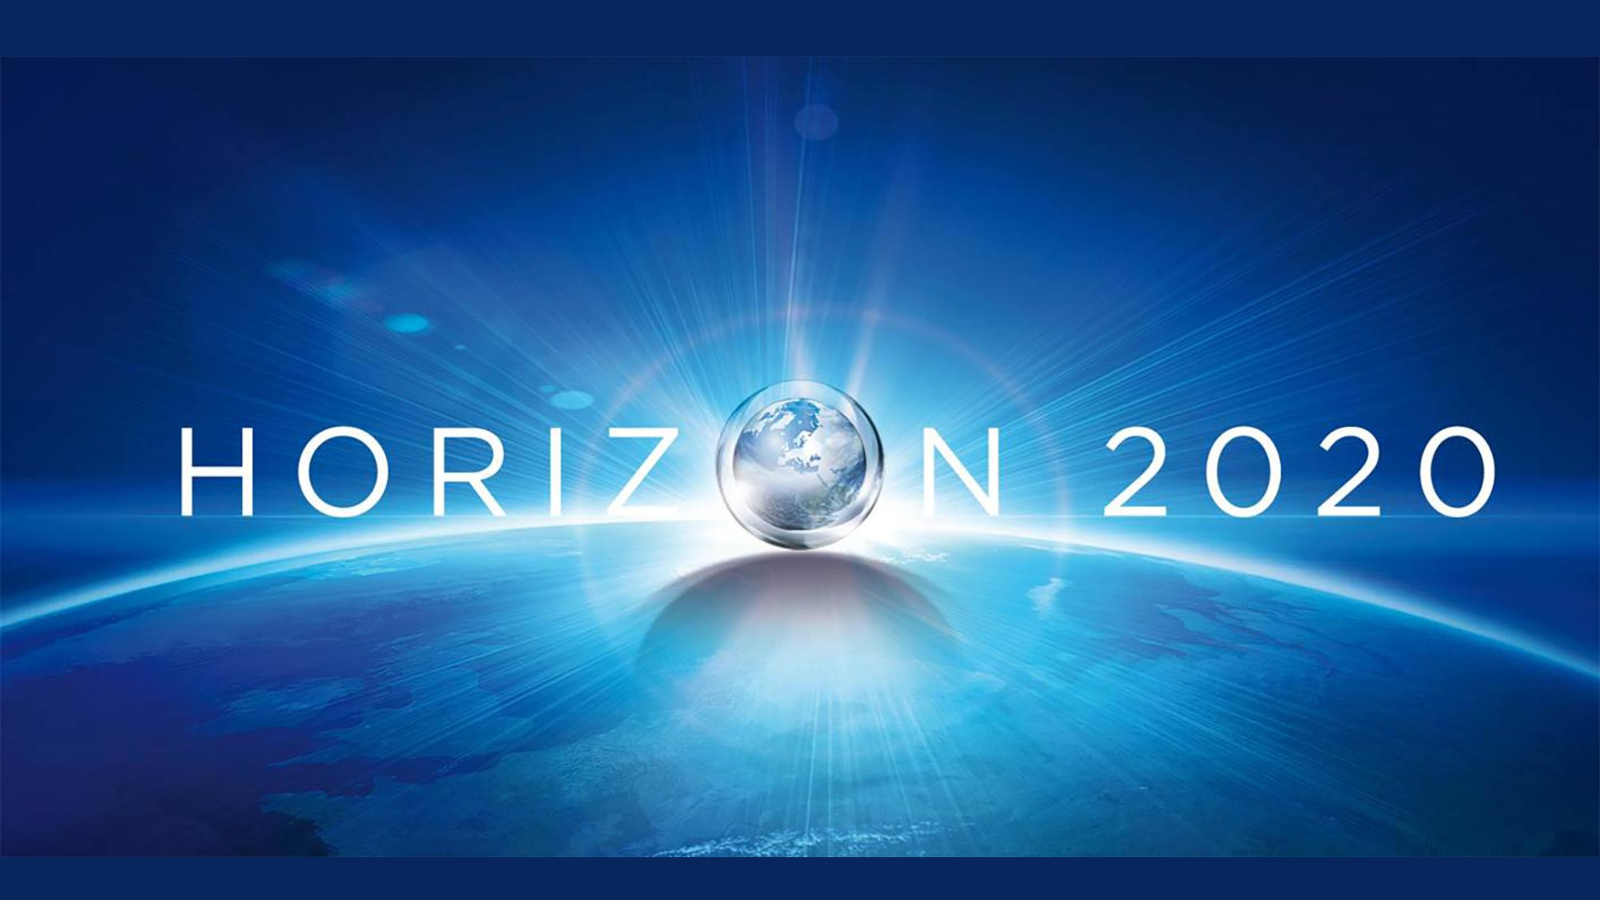 Horizon 2020 evaluation published